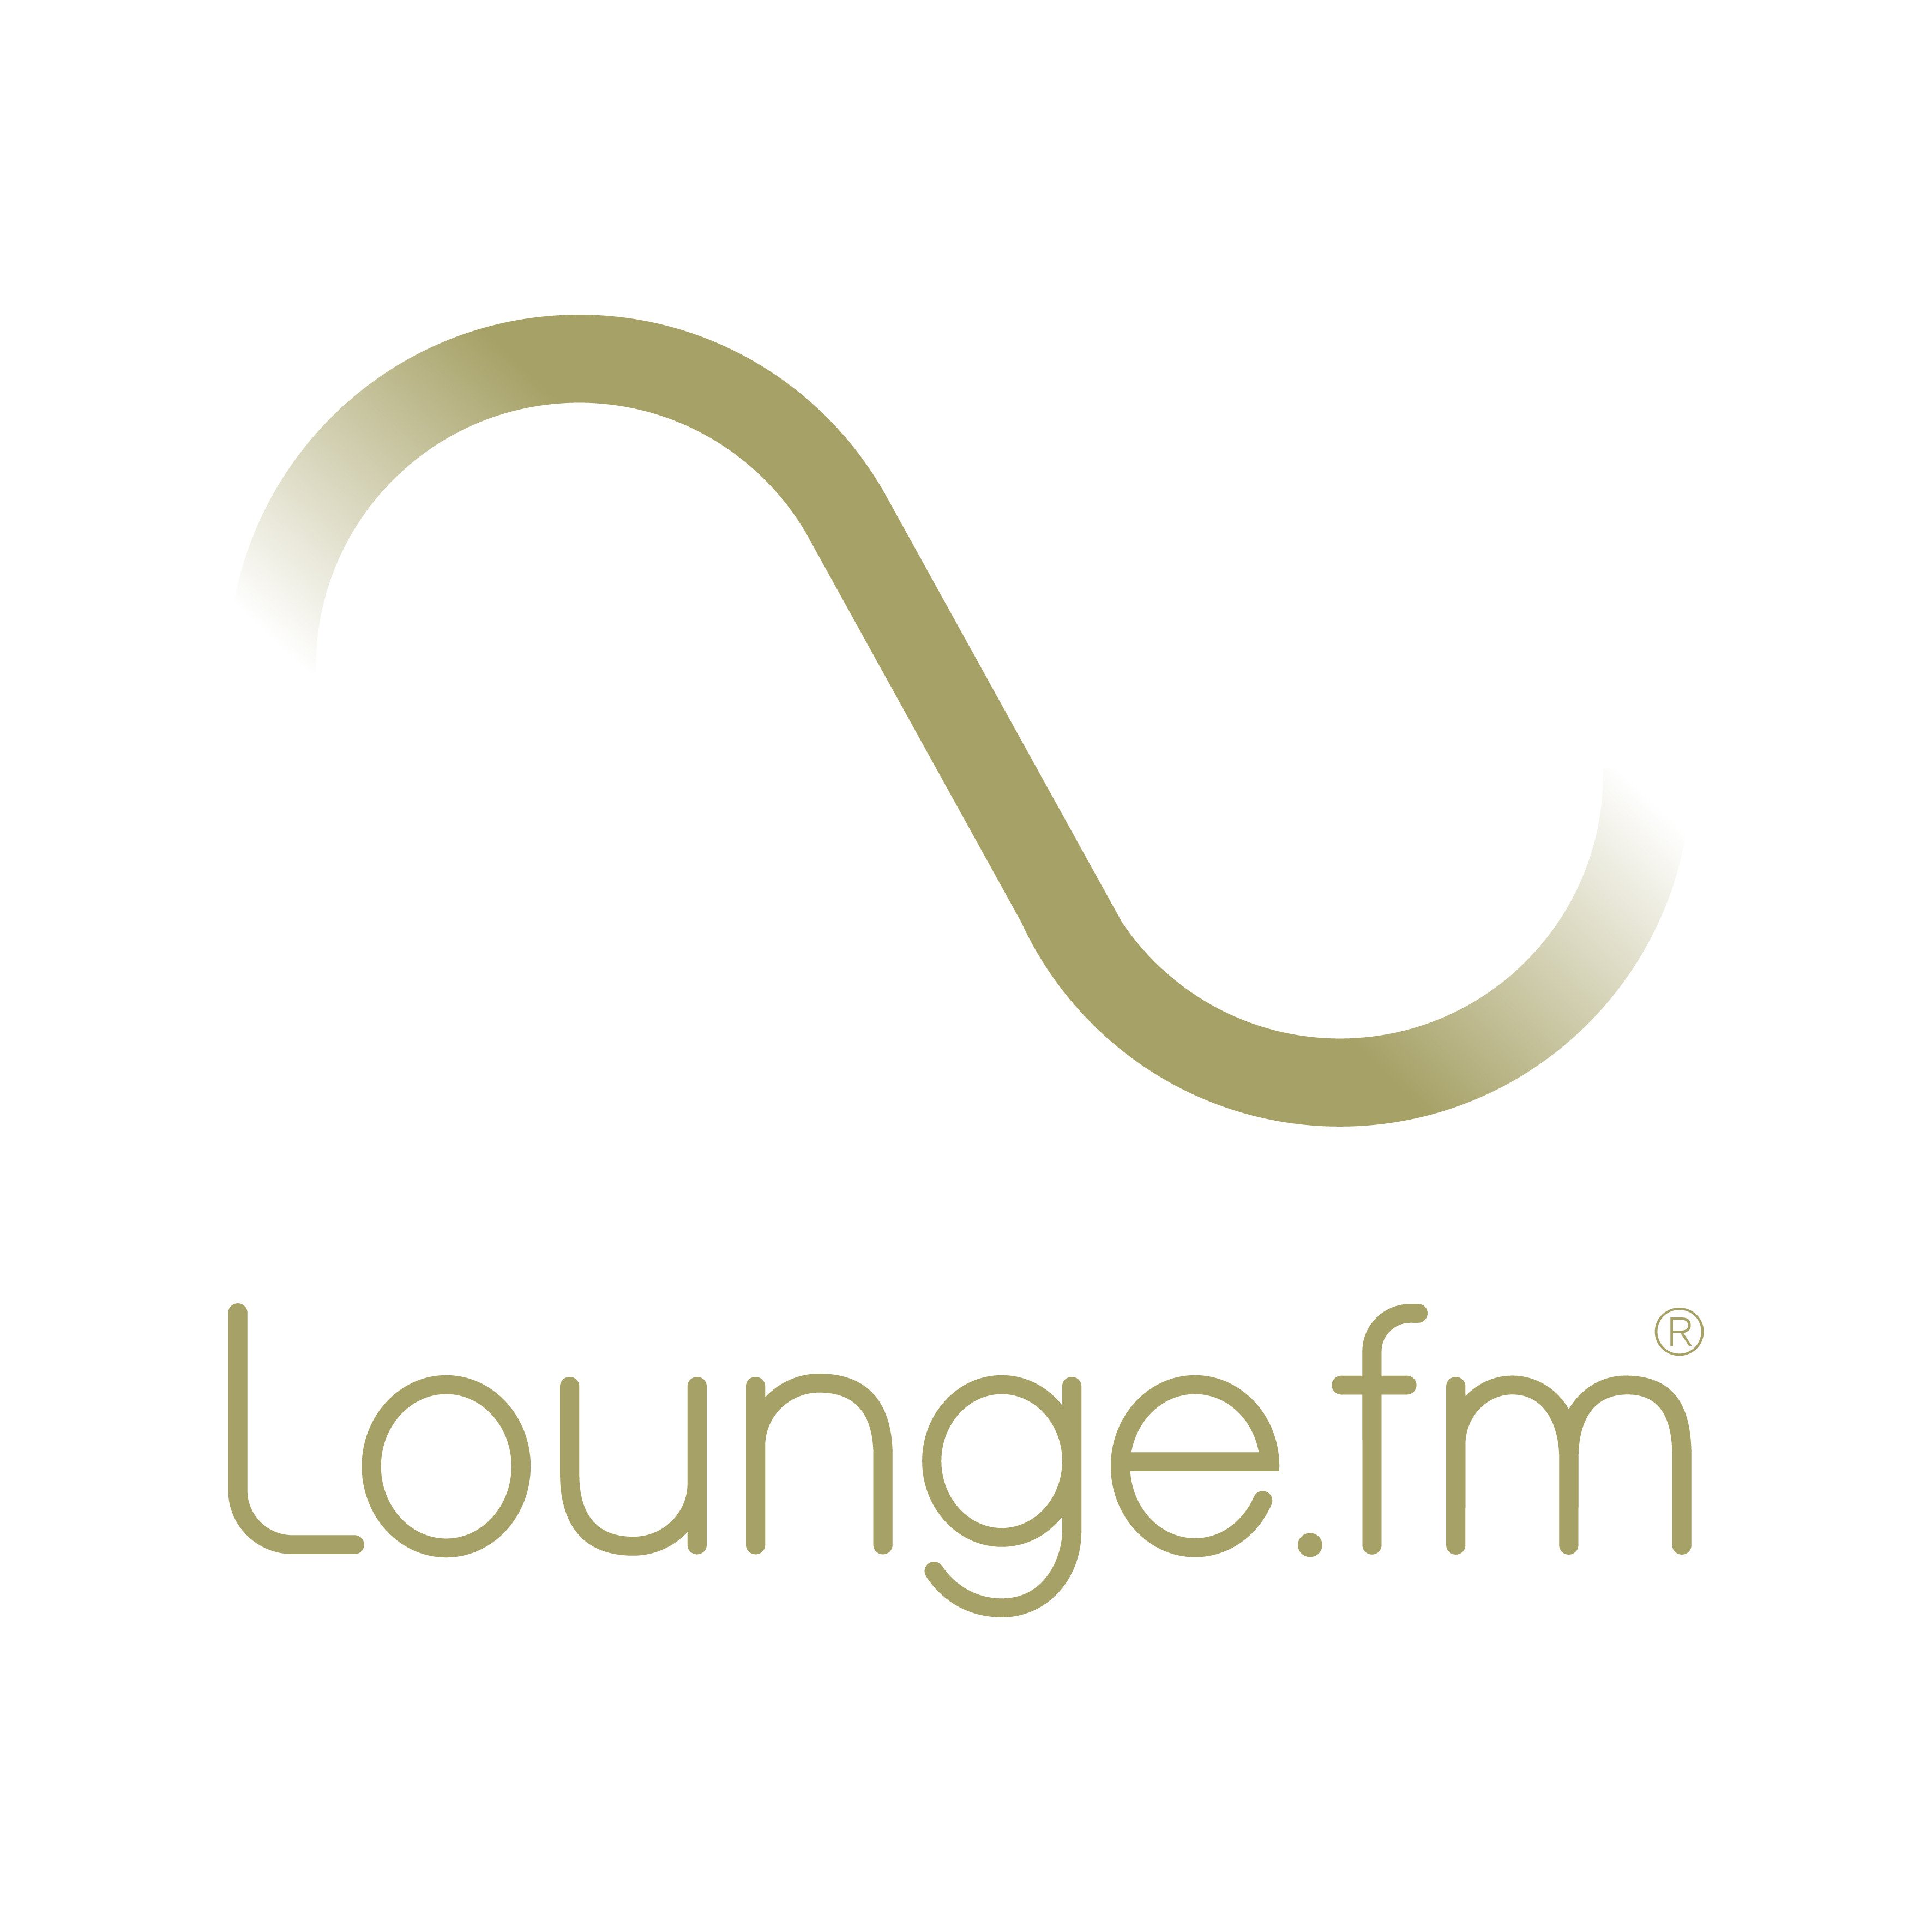 lounge fm logo 2014